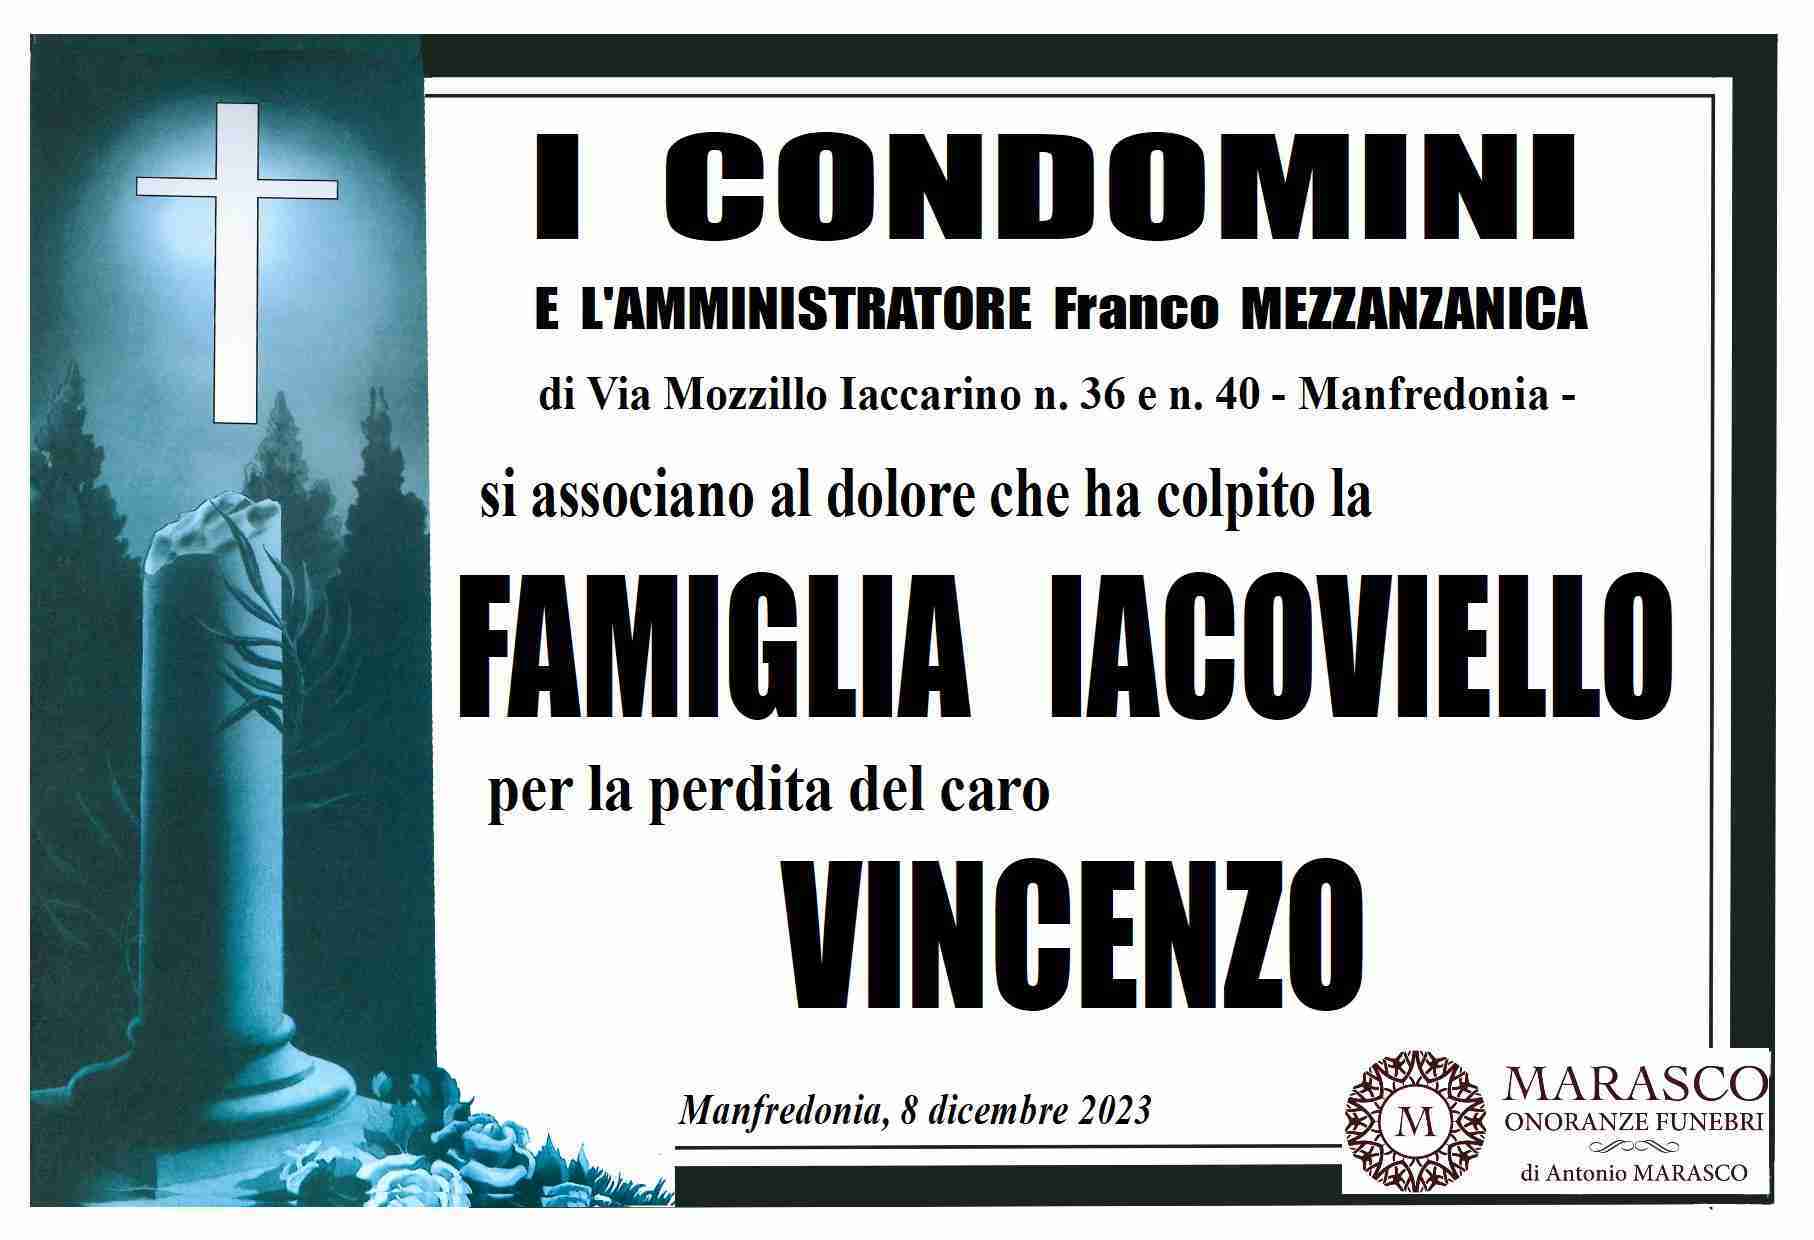 Vincenzo Iacoviello